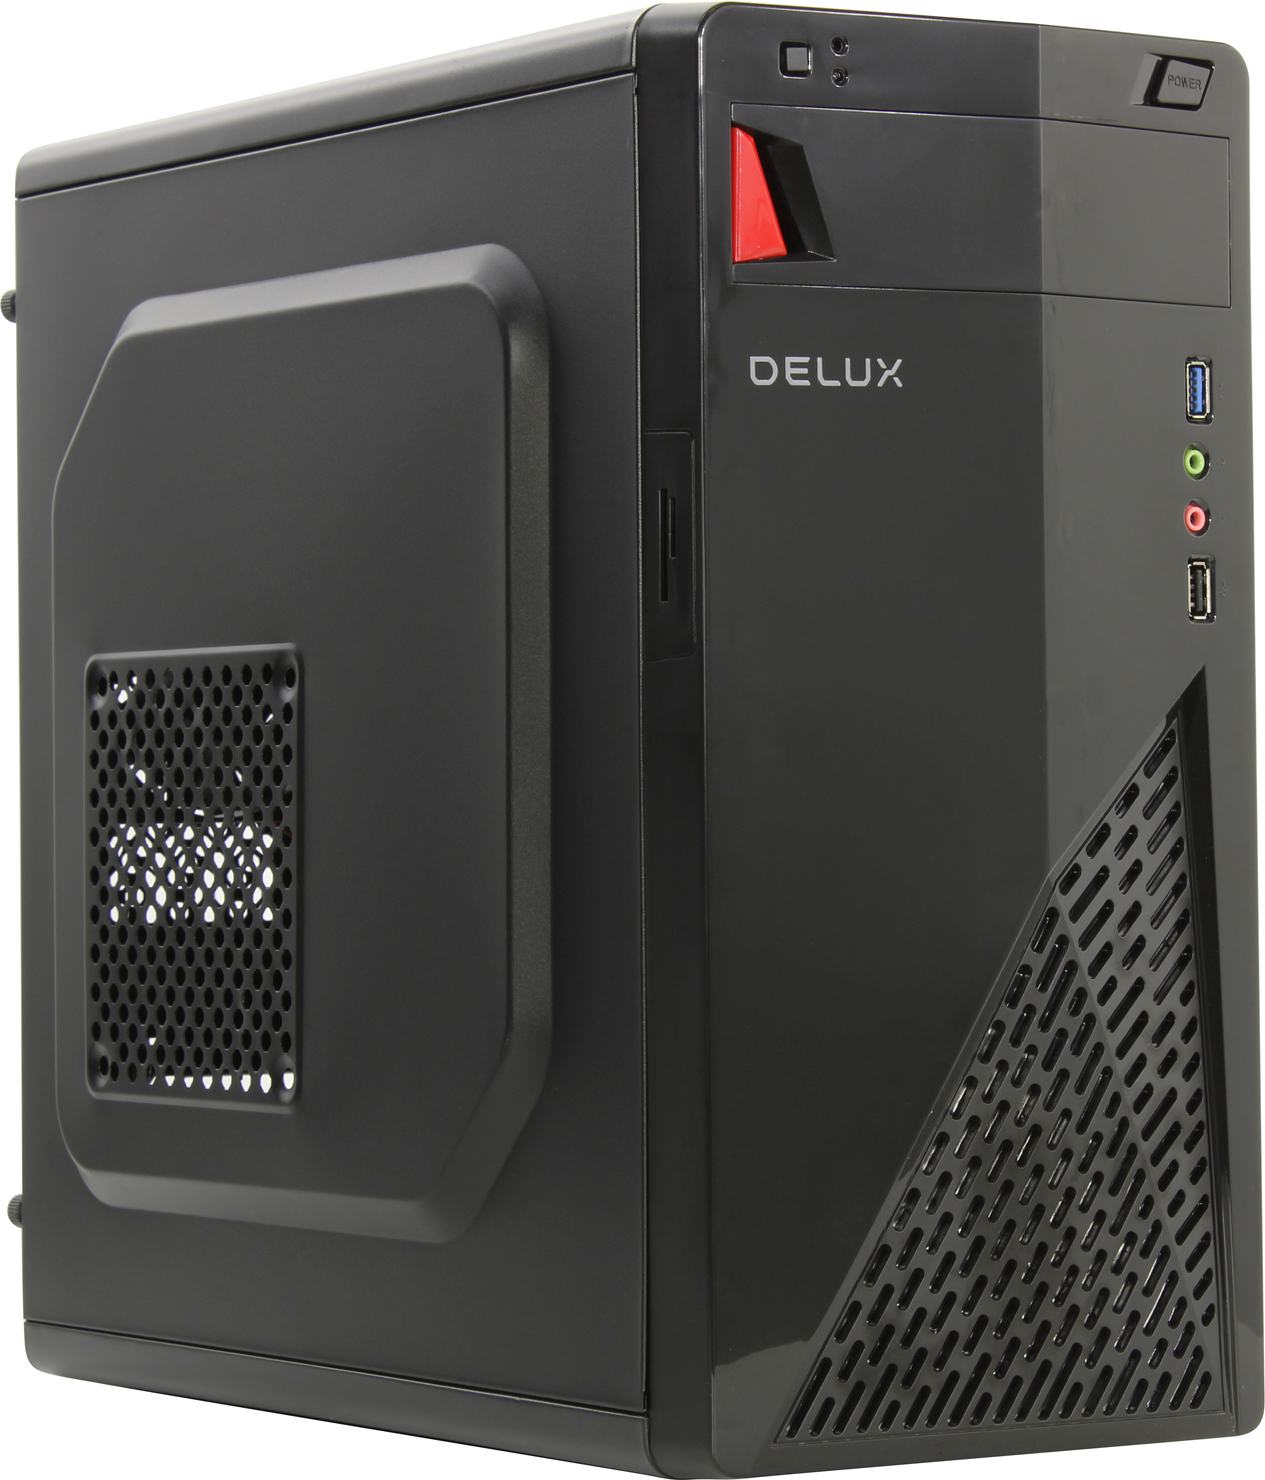 Корпус Delux DW303, mATX, Midi-Tower, USB 3.0, черный, без БП (PCCDLC_DW303)